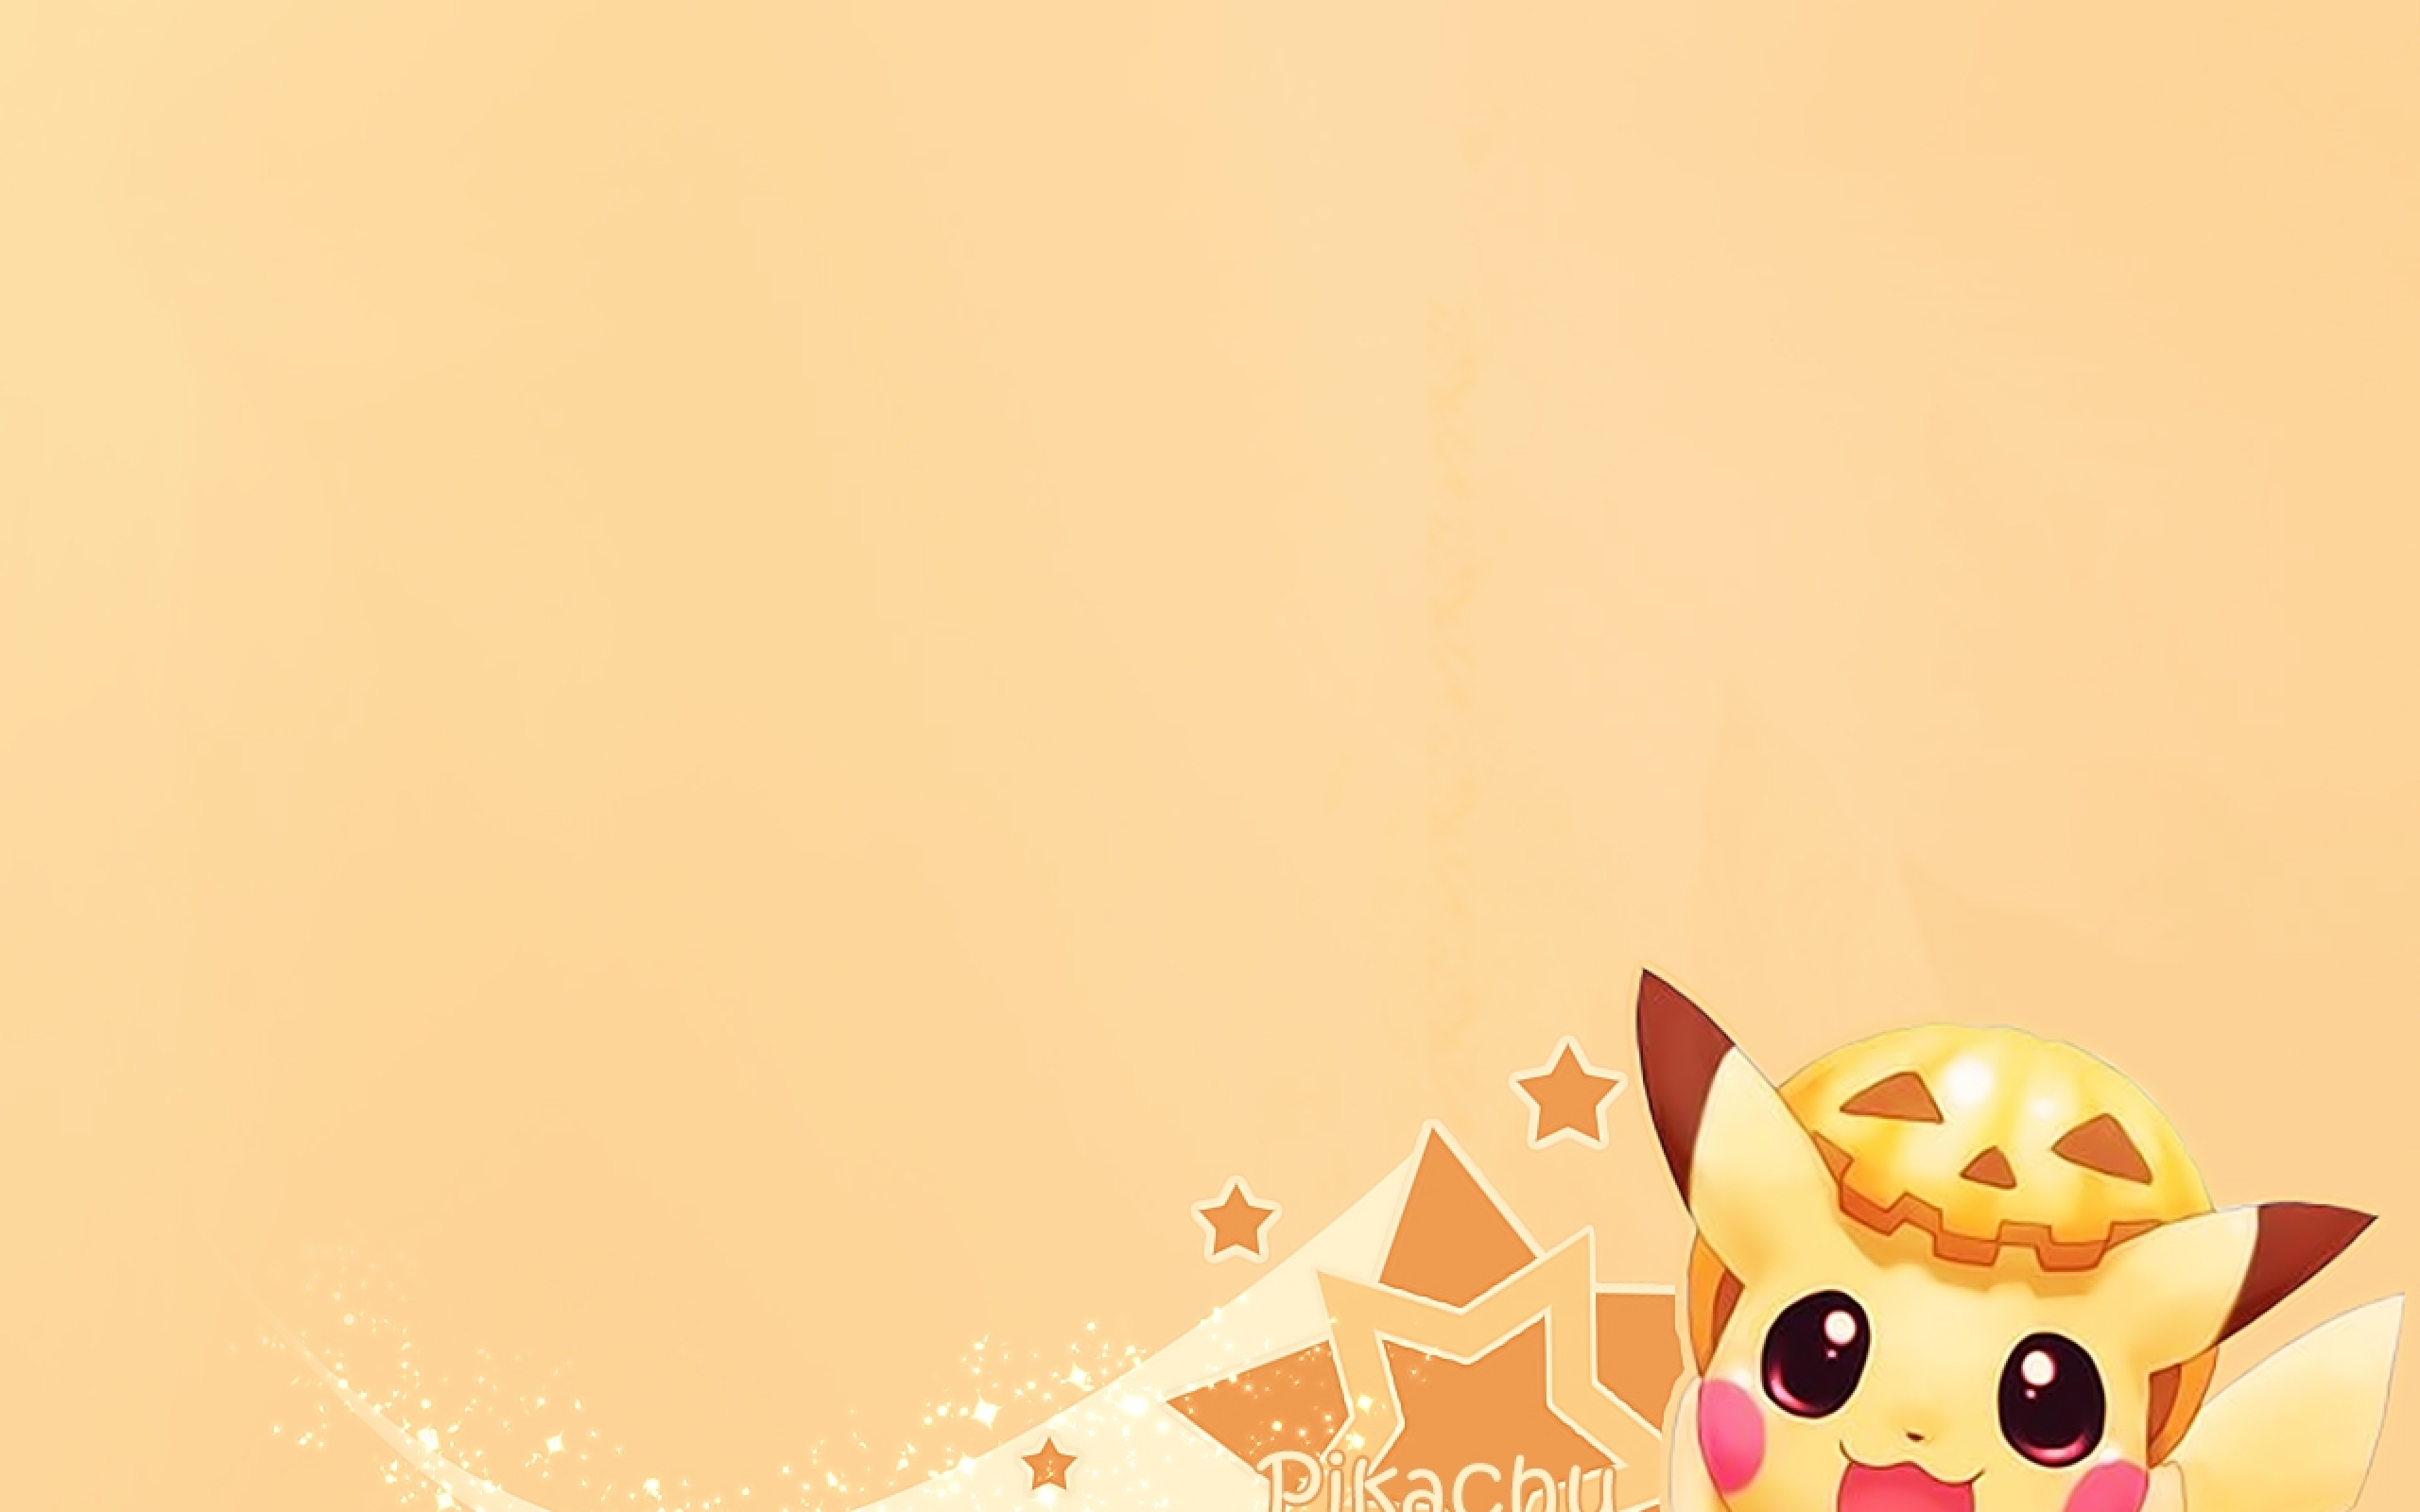 Pikachu - nhân vật Pokemon nổi tiếng và đáng yêu nhất. Hãy chiêm ngưỡng những hình nền đáng yêu của Pikachu và chúng tôi cam đoan sẽ không làm bạn thất vọng!